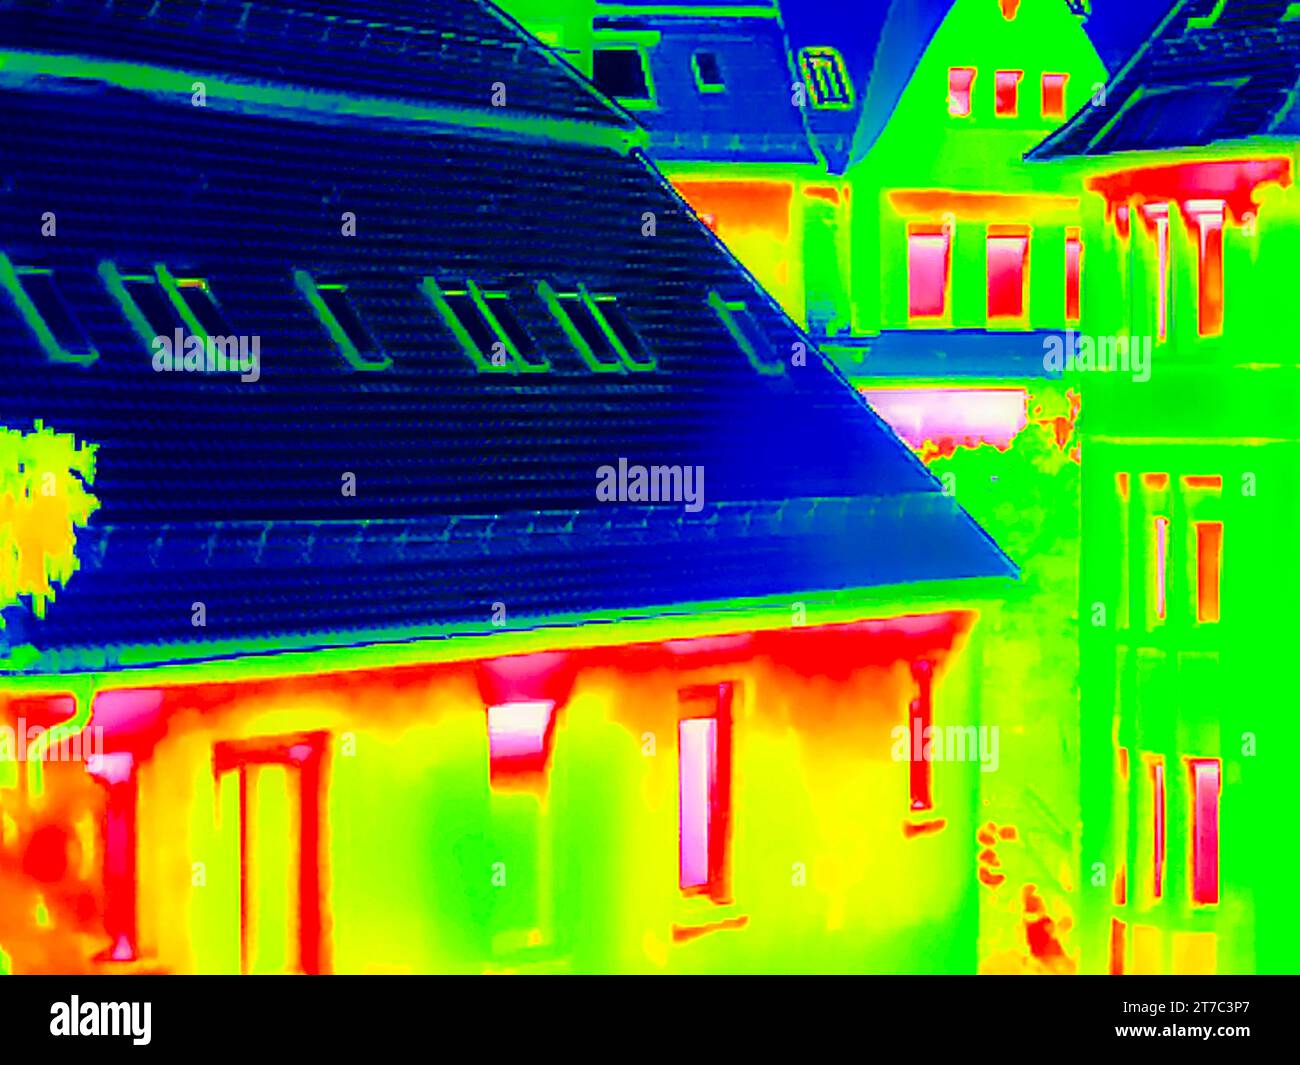 Coûts de l'énergie, vue extérieure d'un bâtiment, photo symbolique pour la crise énergétique, coûts de chauffage, caméra thermique, thermographie, interpolée Banque D'Images